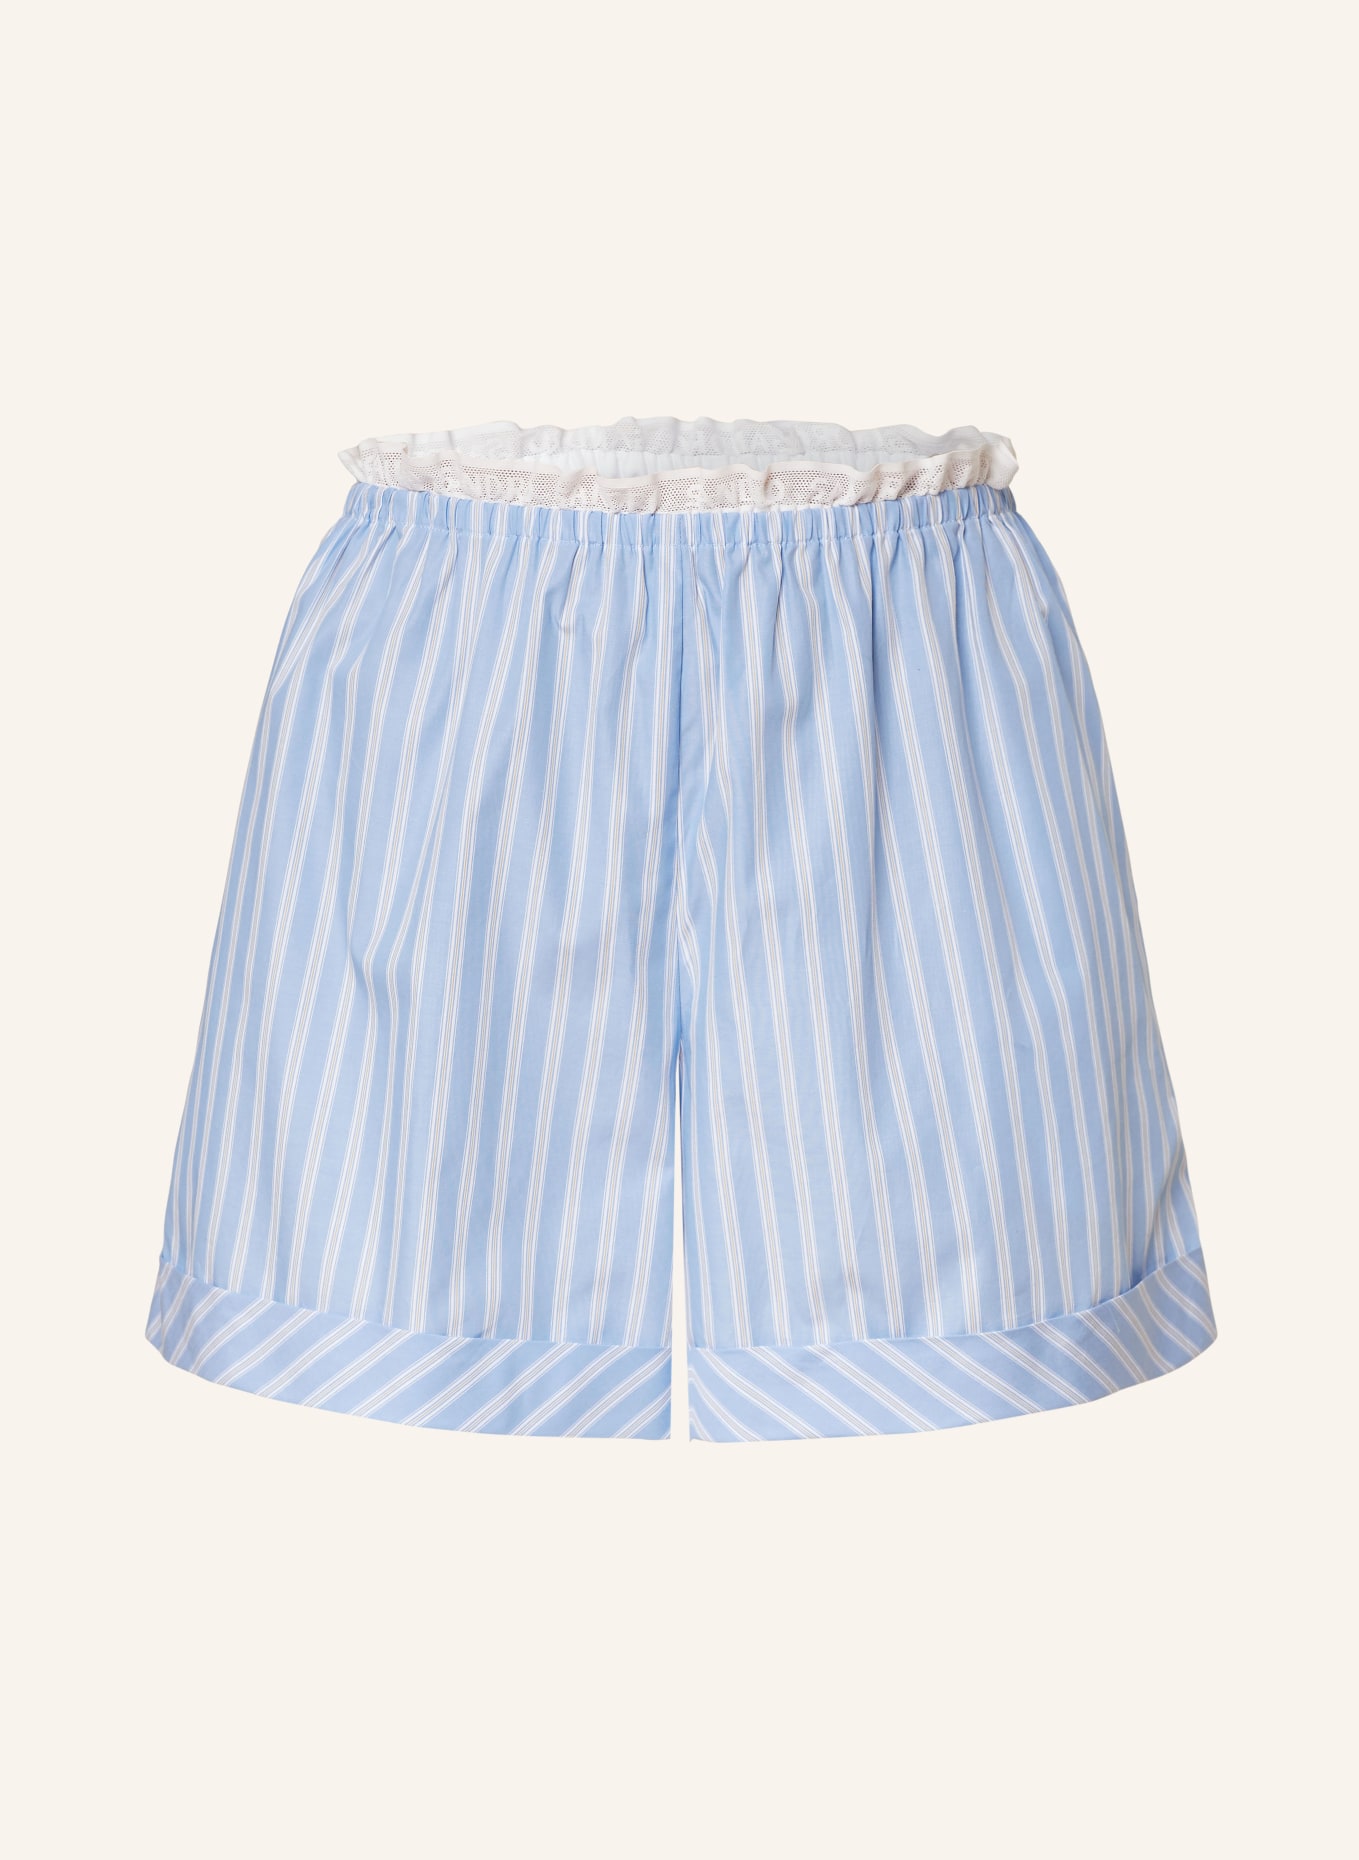 SANDRO Shorts mit Rüschen, Farbe: BLAU/ WEISS (Bild 1)